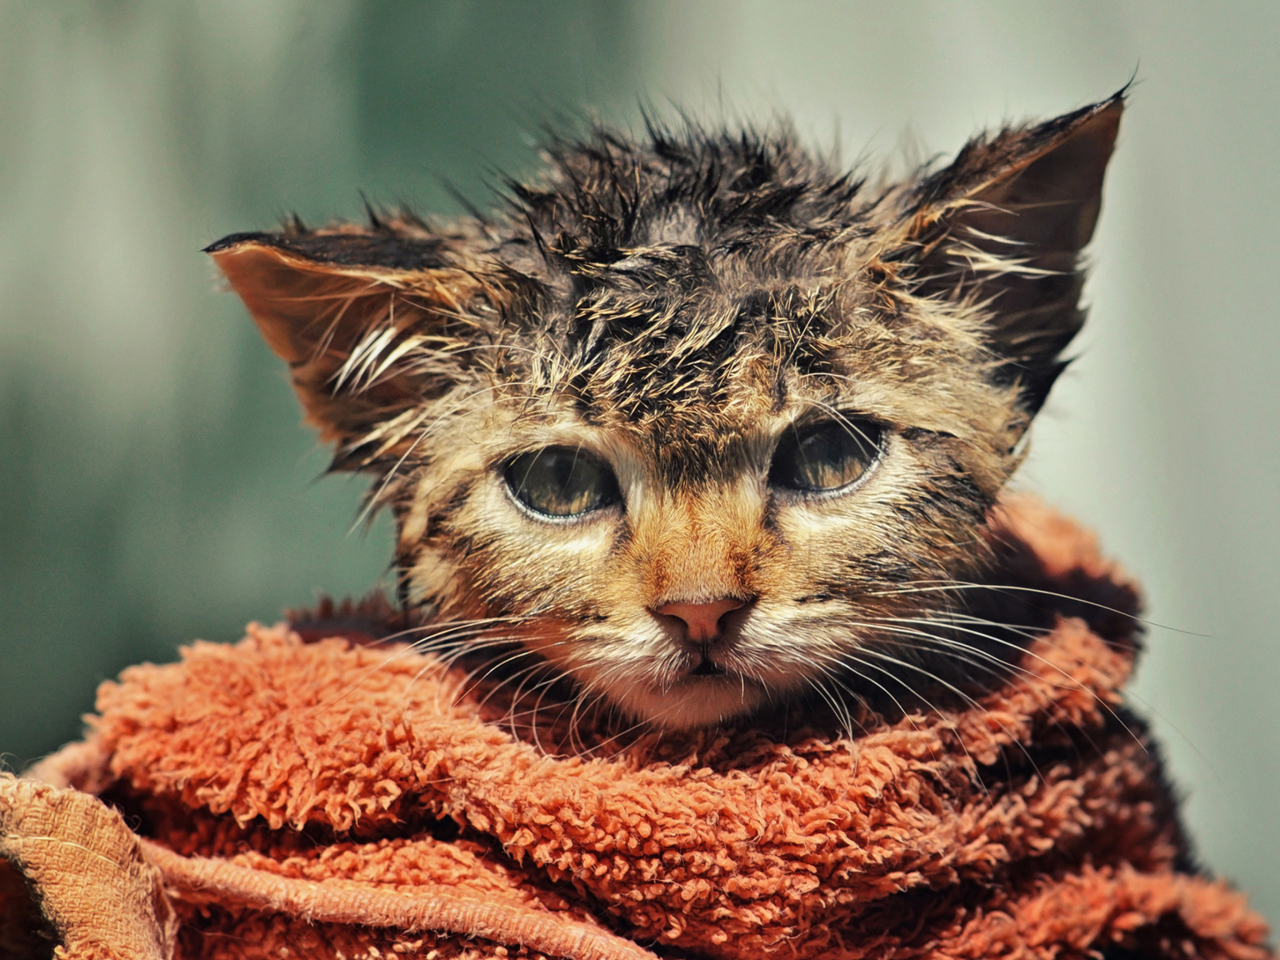 Cute Wet Kitty Cat After Having Shower wallpaper 1280x960